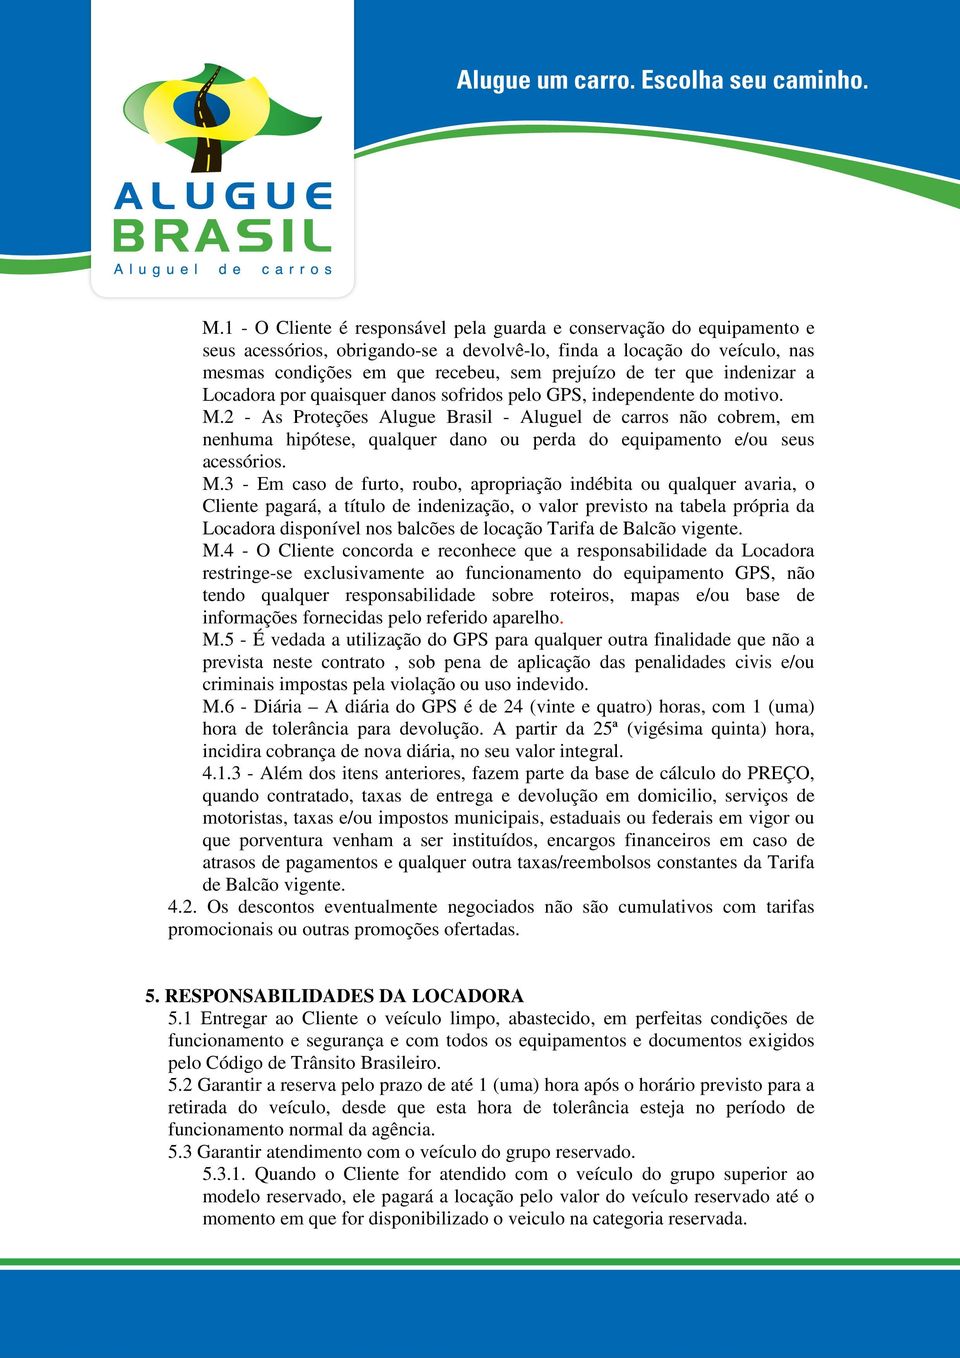 2 - As Proteções Alugue Brasil - Aluguel de carros não cobrem, em nenhuma hipótese, qualquer dano ou perda do equipamento e/ou seus acessórios. M.